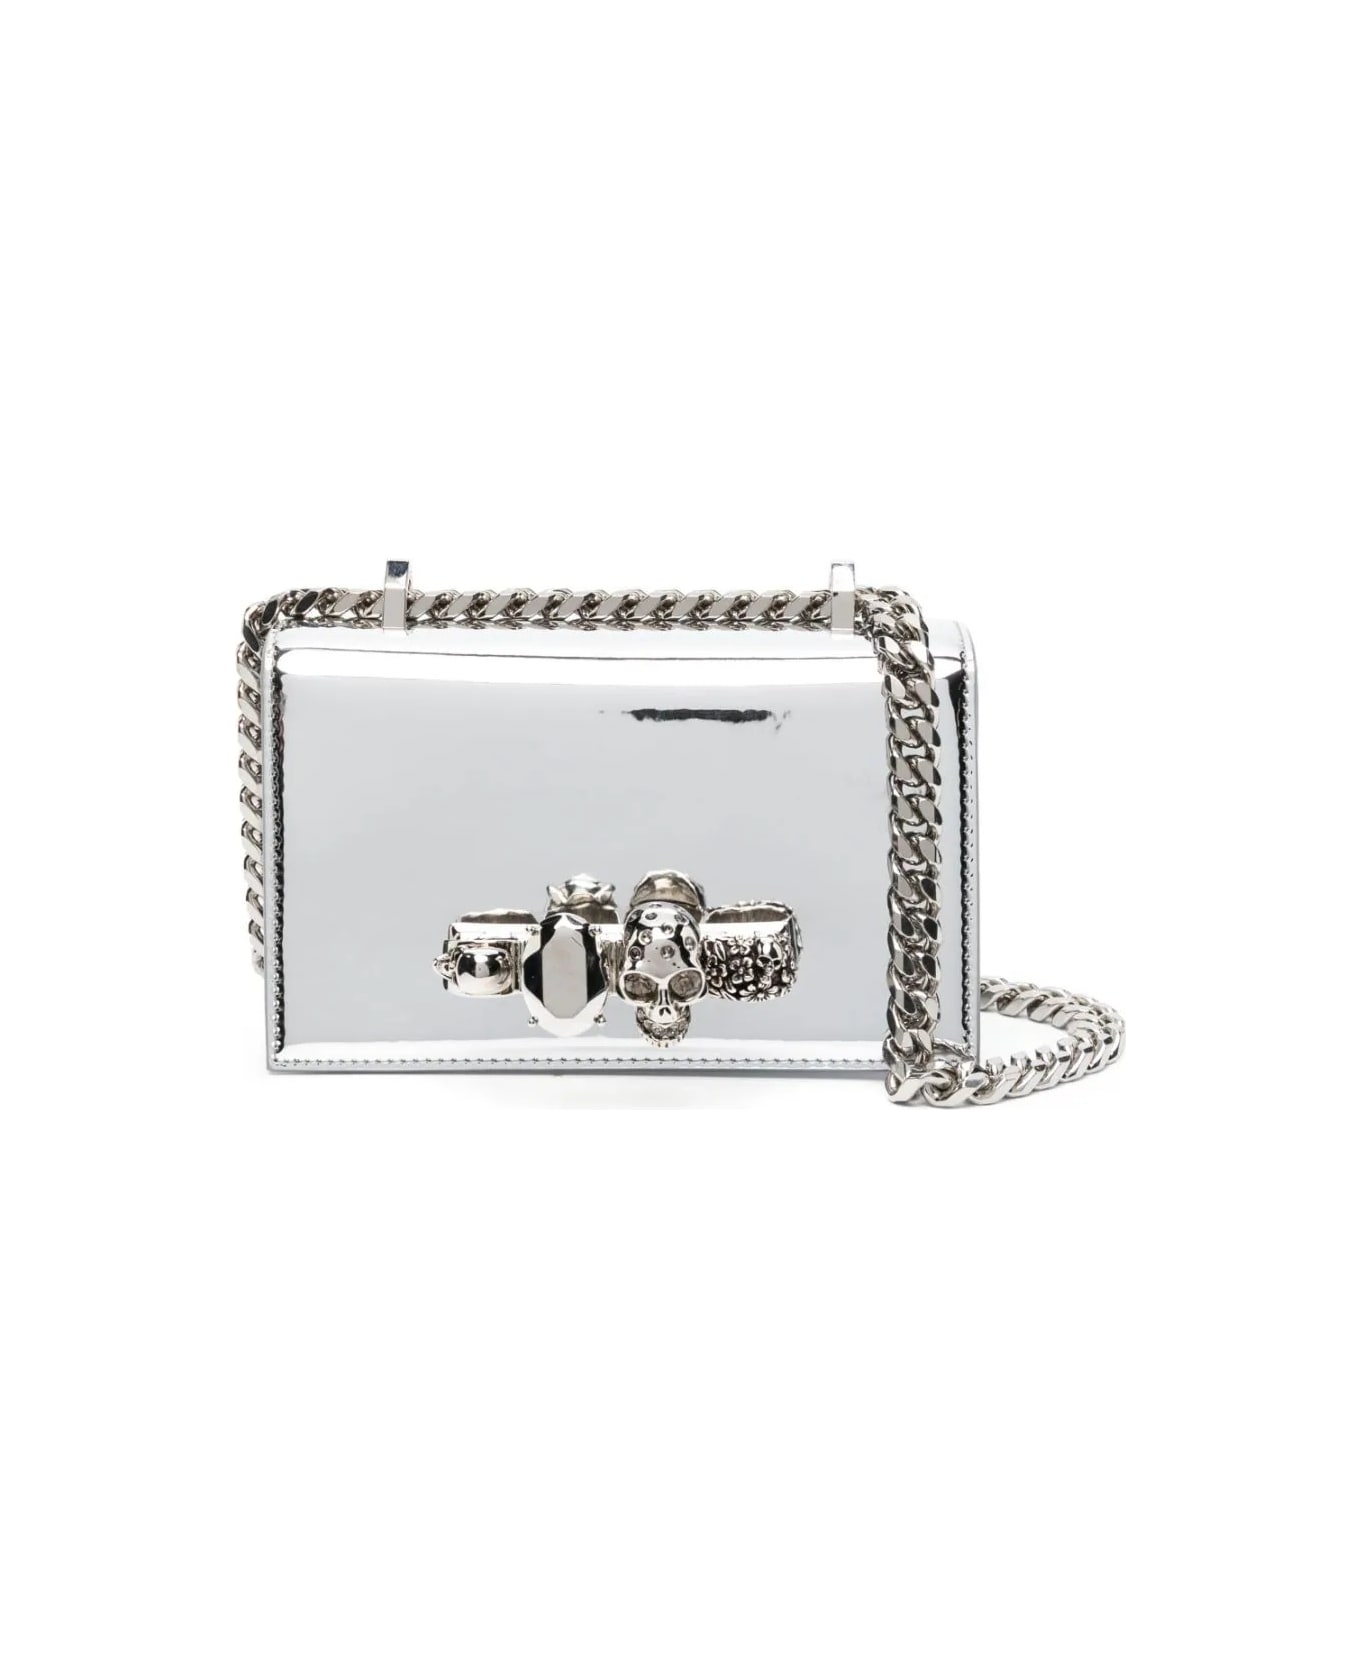 Alexander McQueen Jewelled Satchel Crossbody Bag - Silver